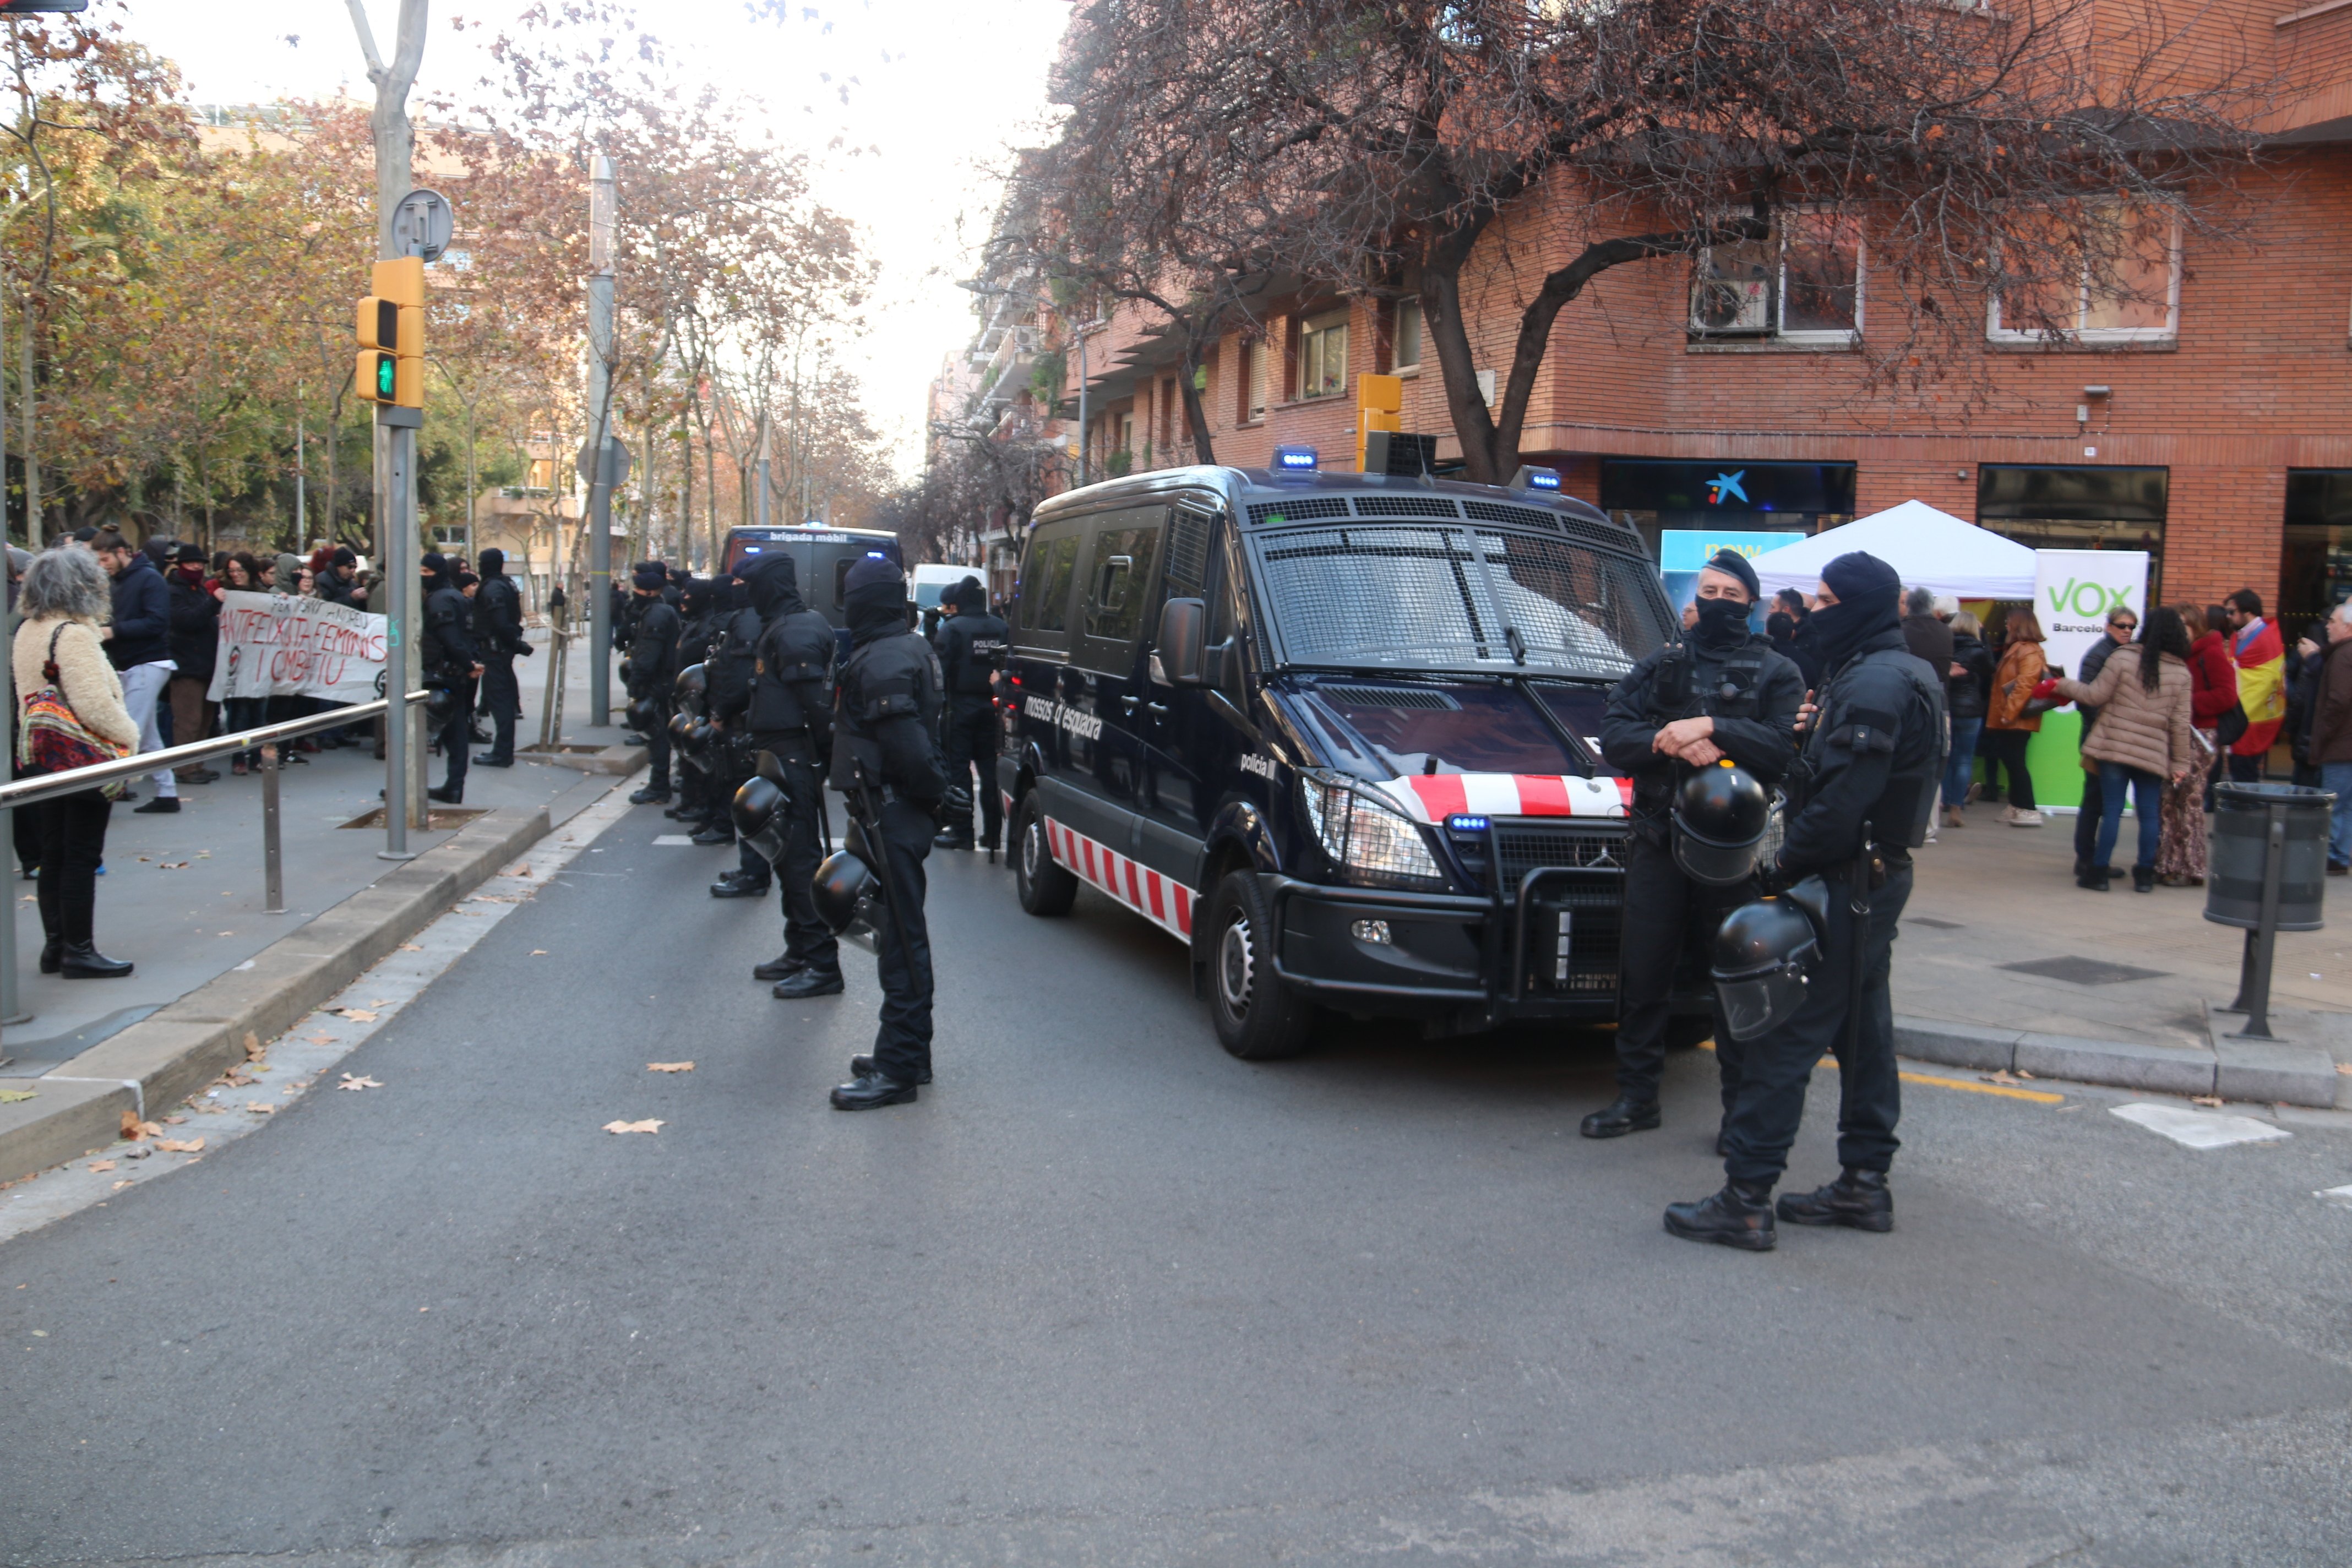 Tres detinguts durant una concentració contra Vox a Sant Andreu